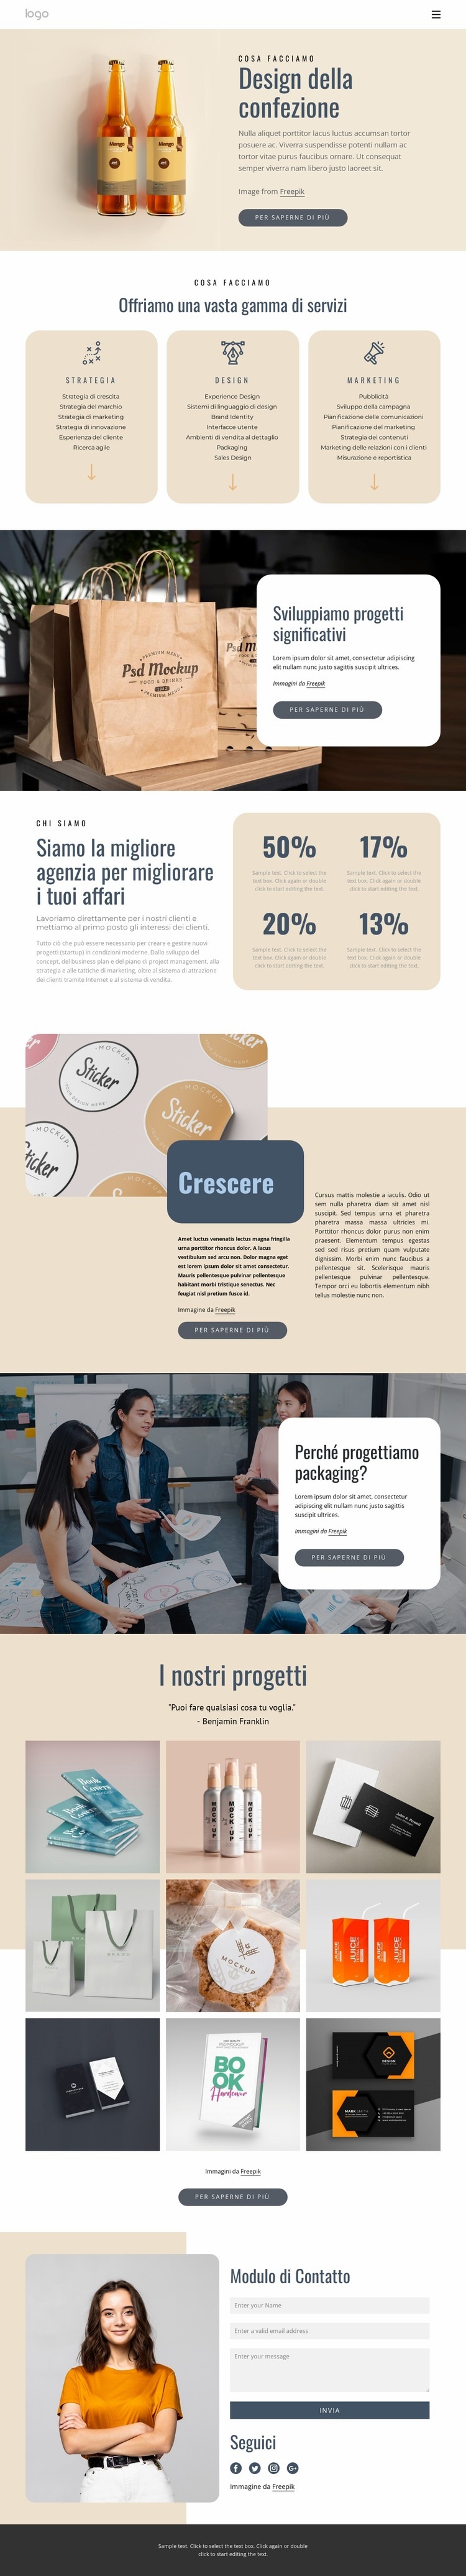 Design del marchio e del packaging Mockup del sito web